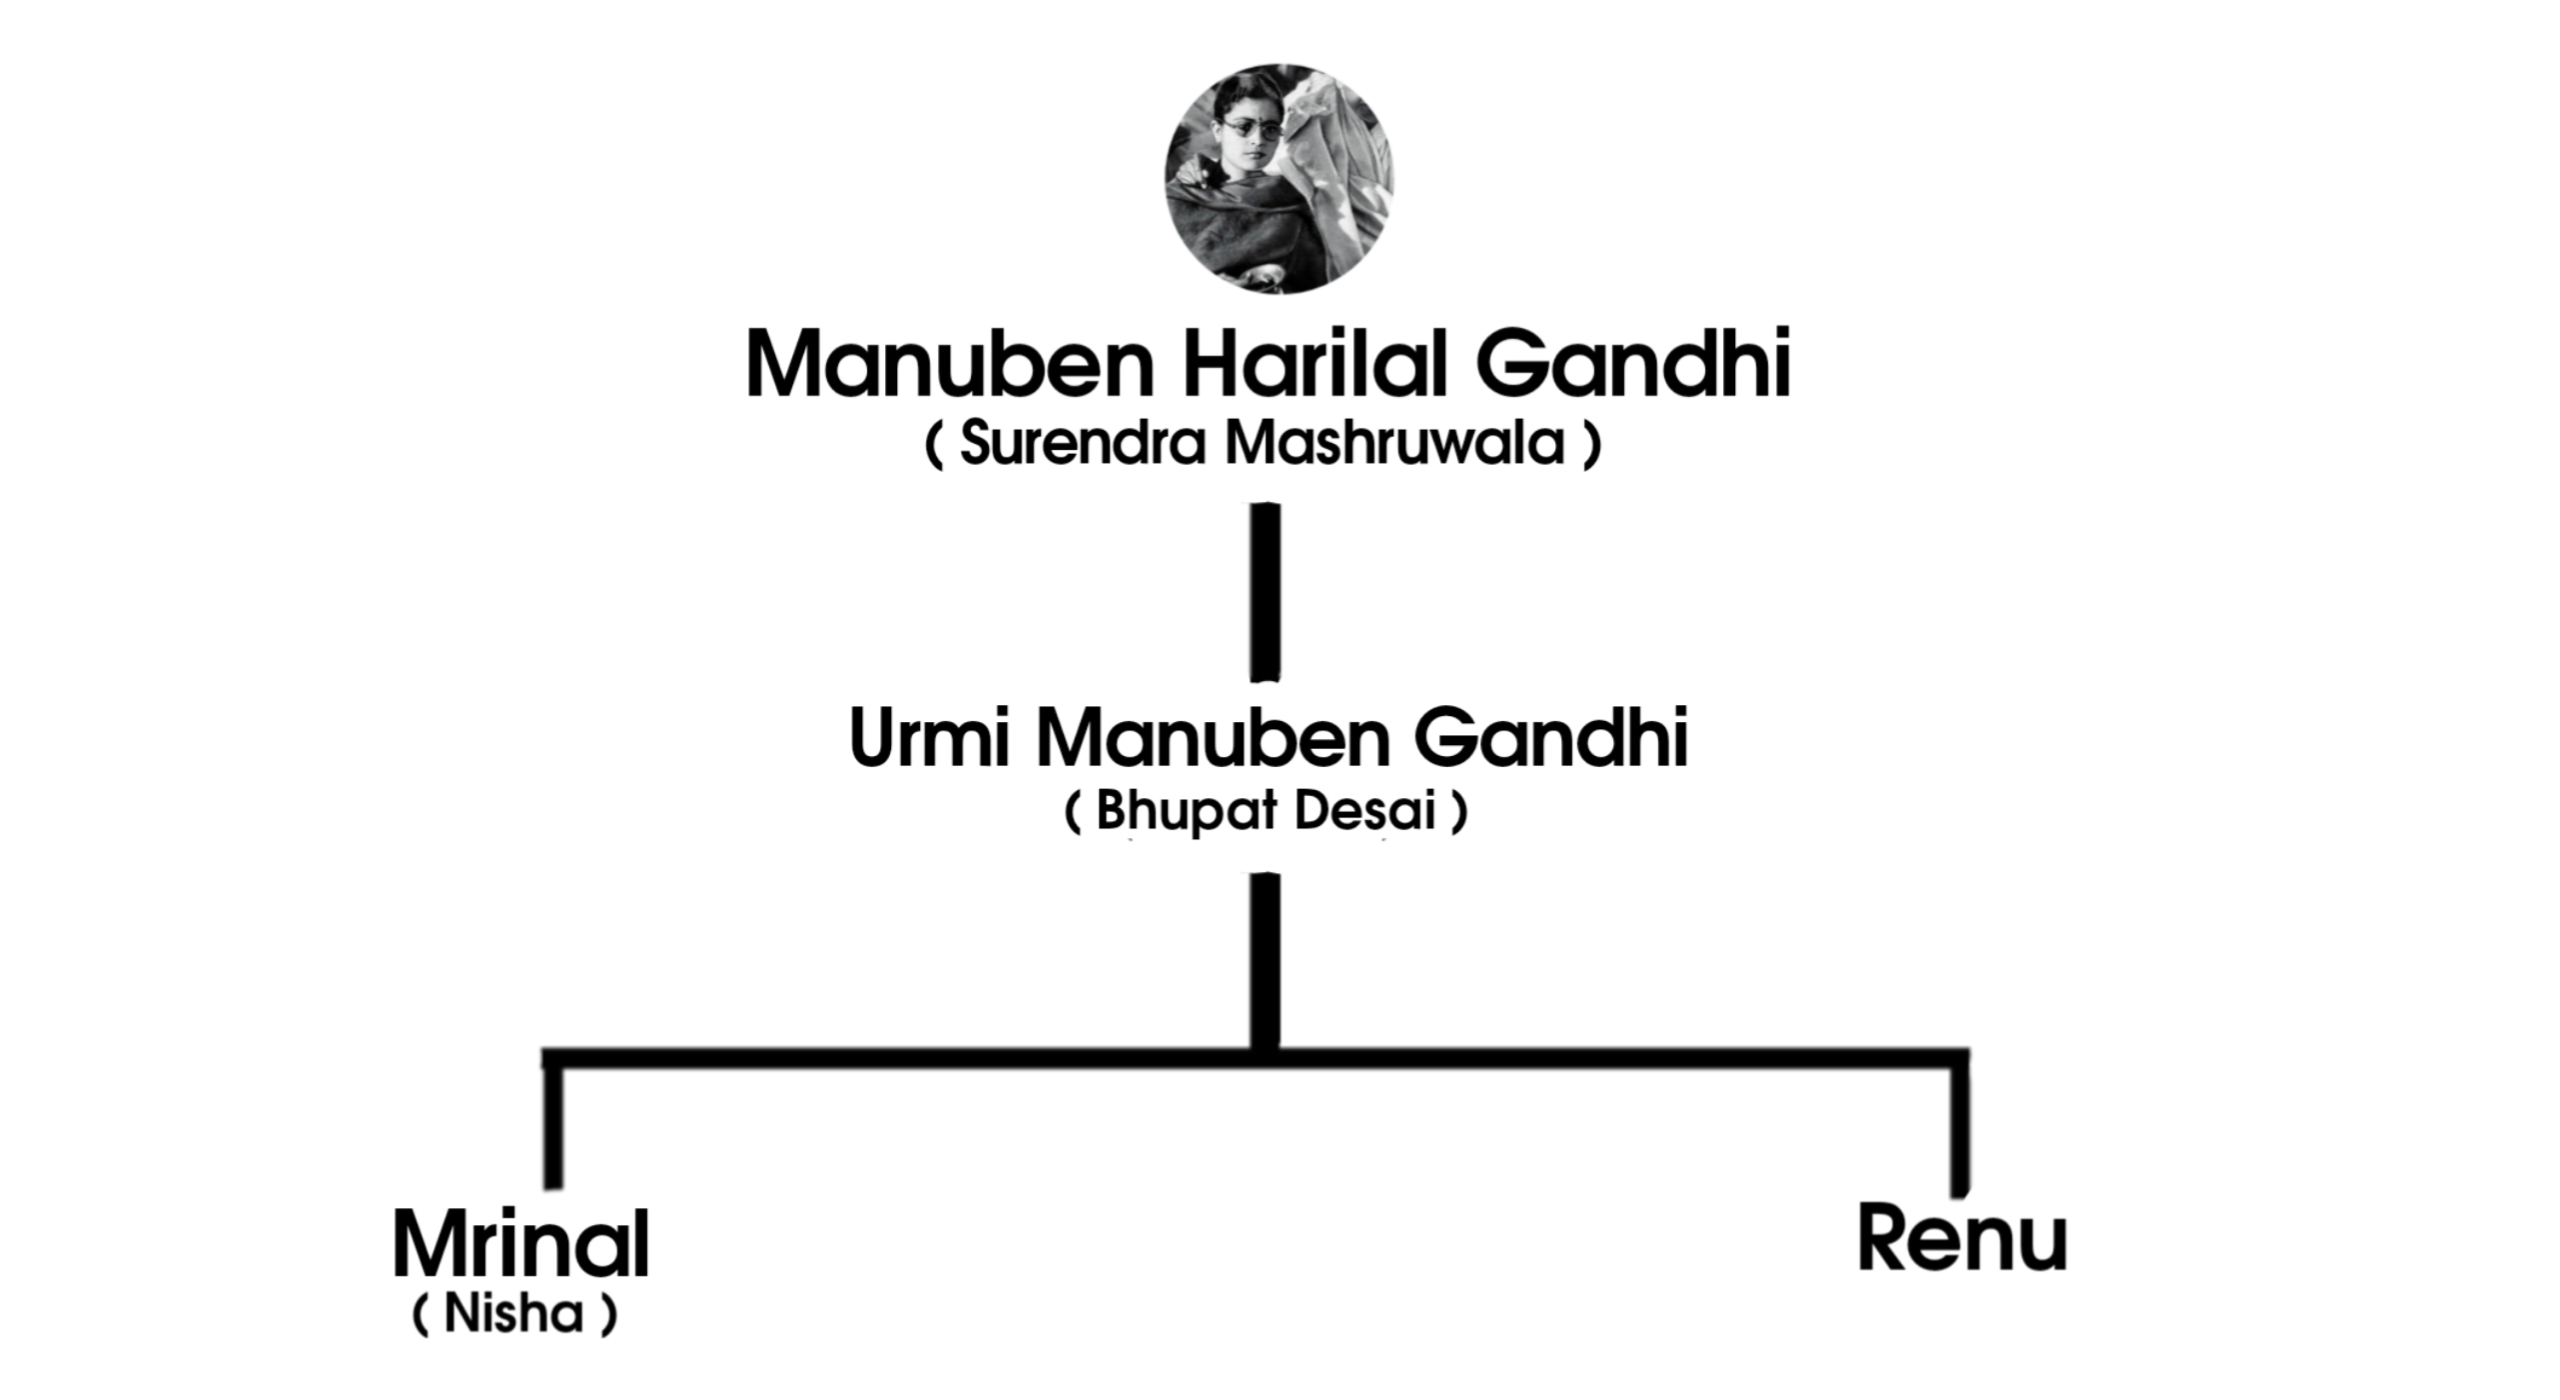 Manuben harilal Gandhi Family tree